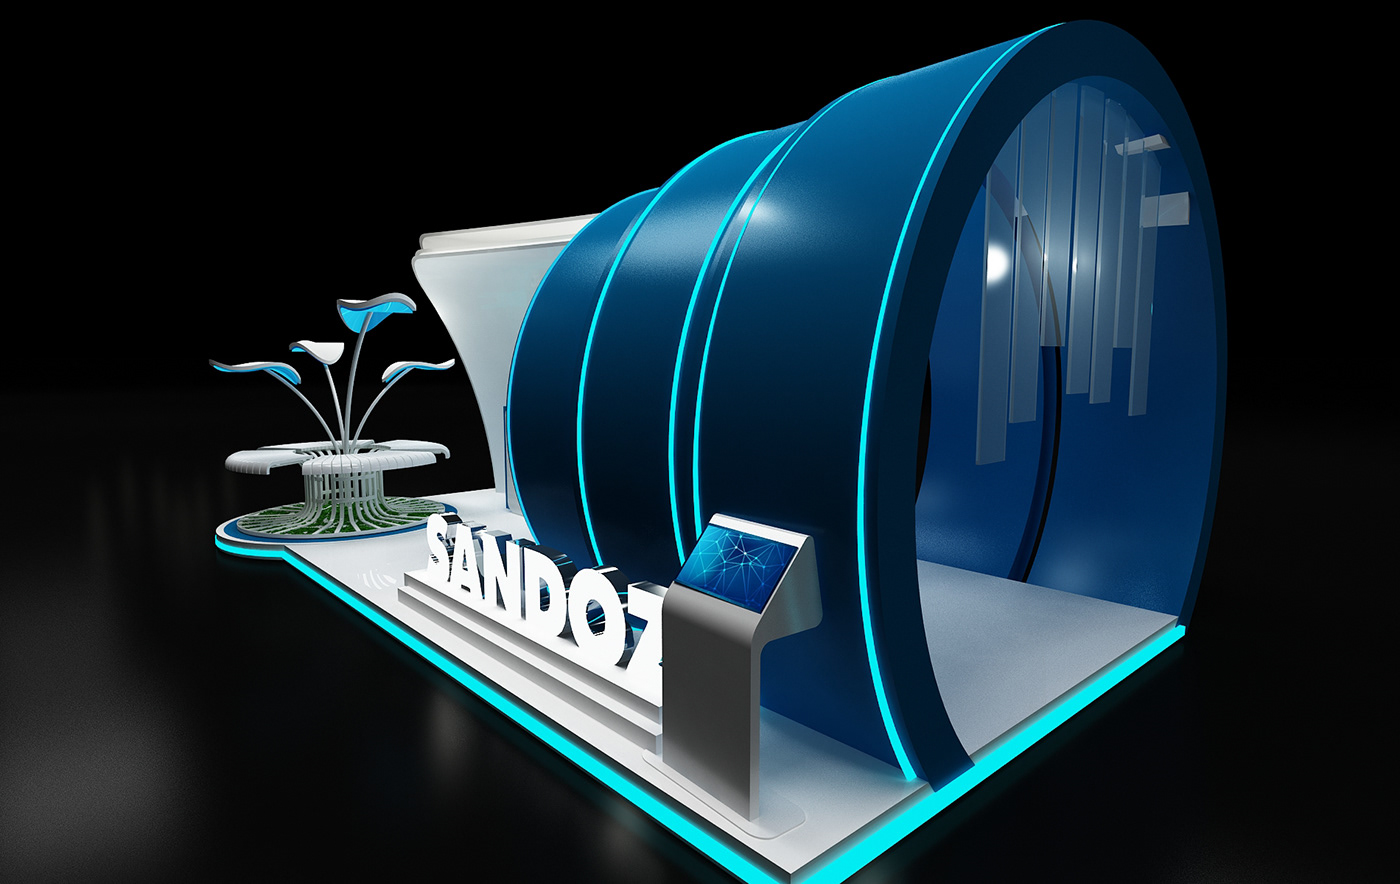 Display Sandoz booth Stand exhbo Pharma medical novarts